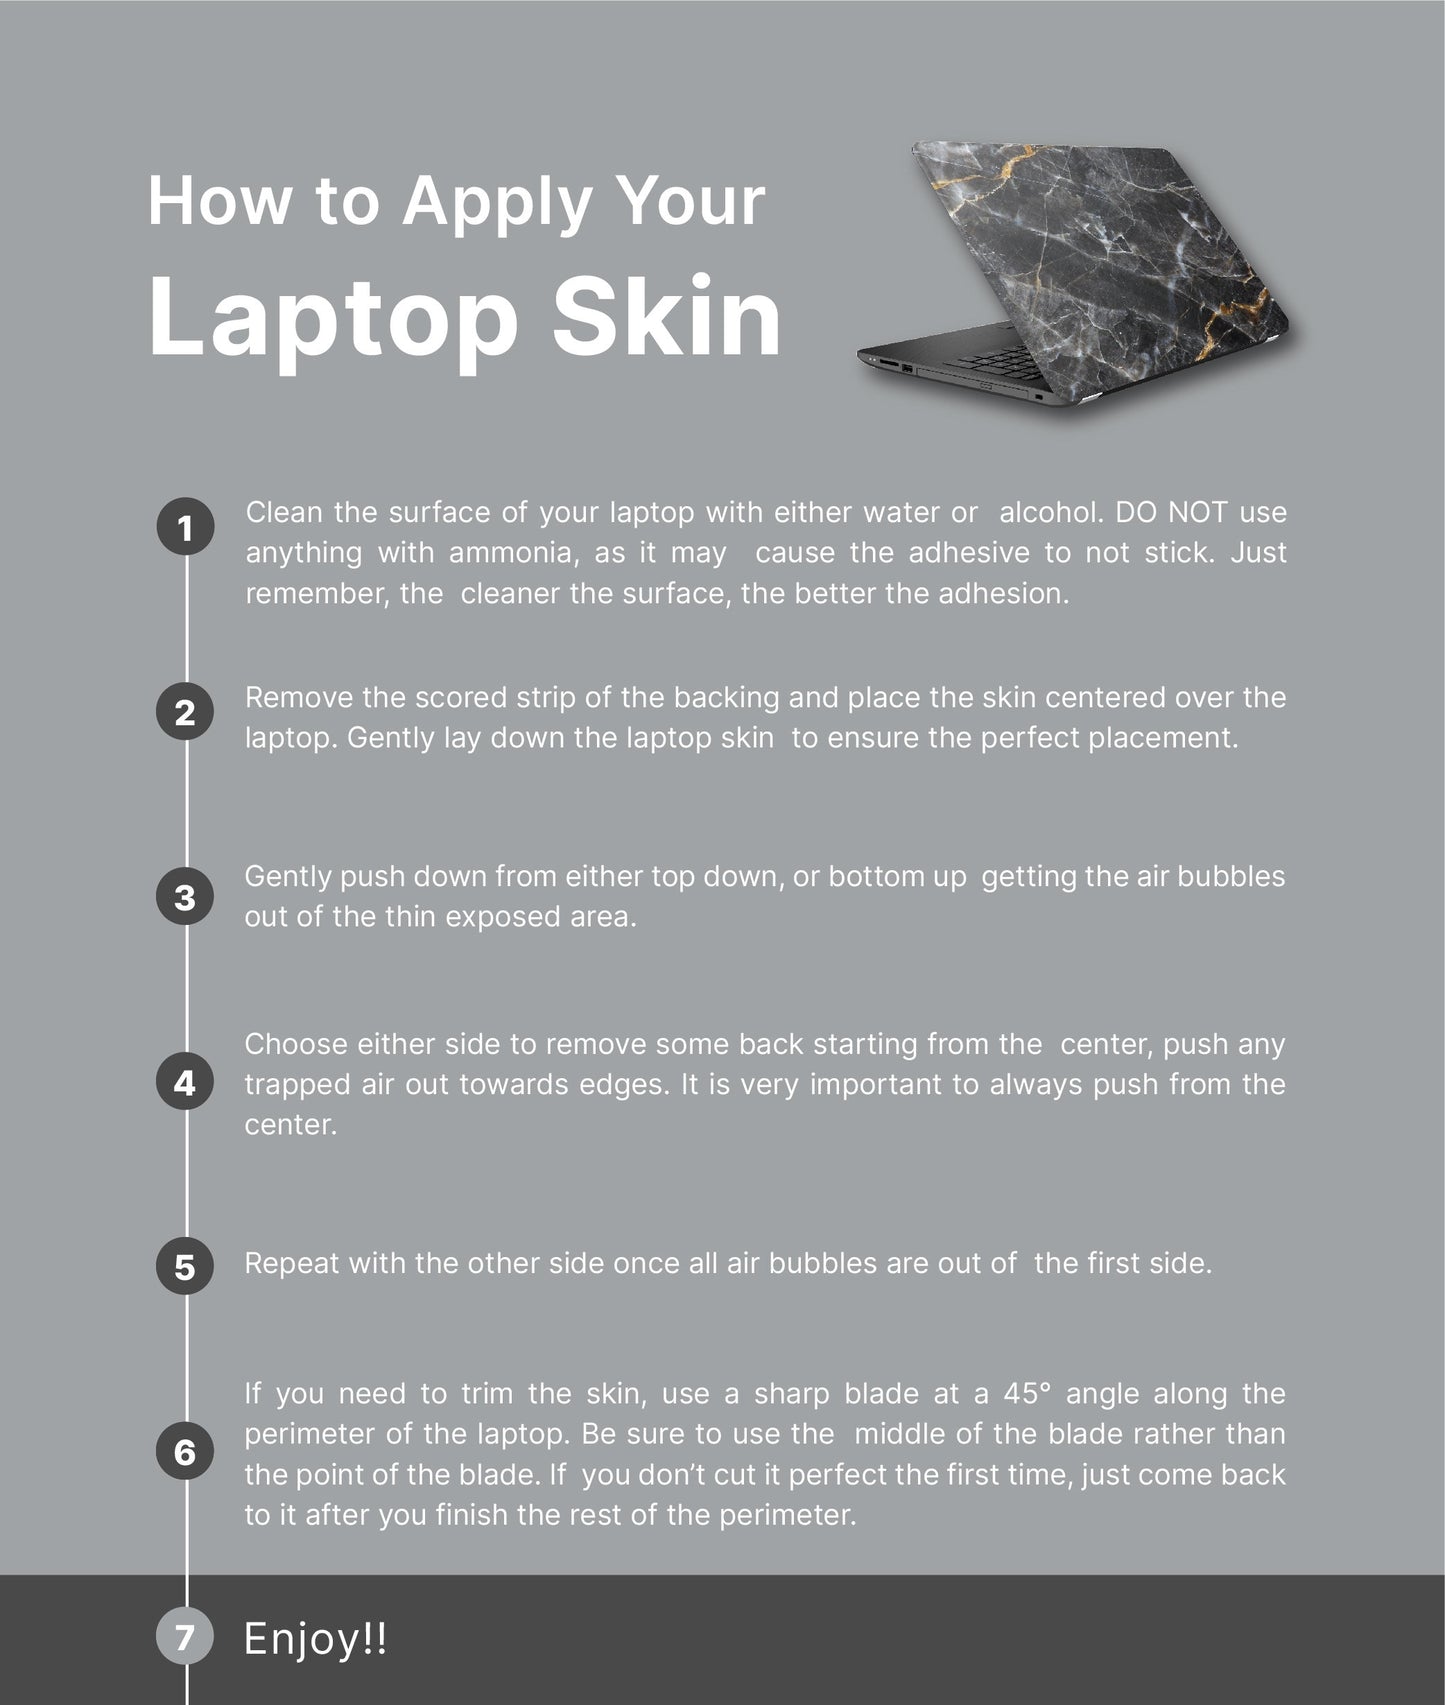 Dark Floral Laptop Skin, Laptop Cover, Laptop Skins, Removable Laptop Skins, Laptop Decal, Customized Laptop Skin, Laptop Stickers 167